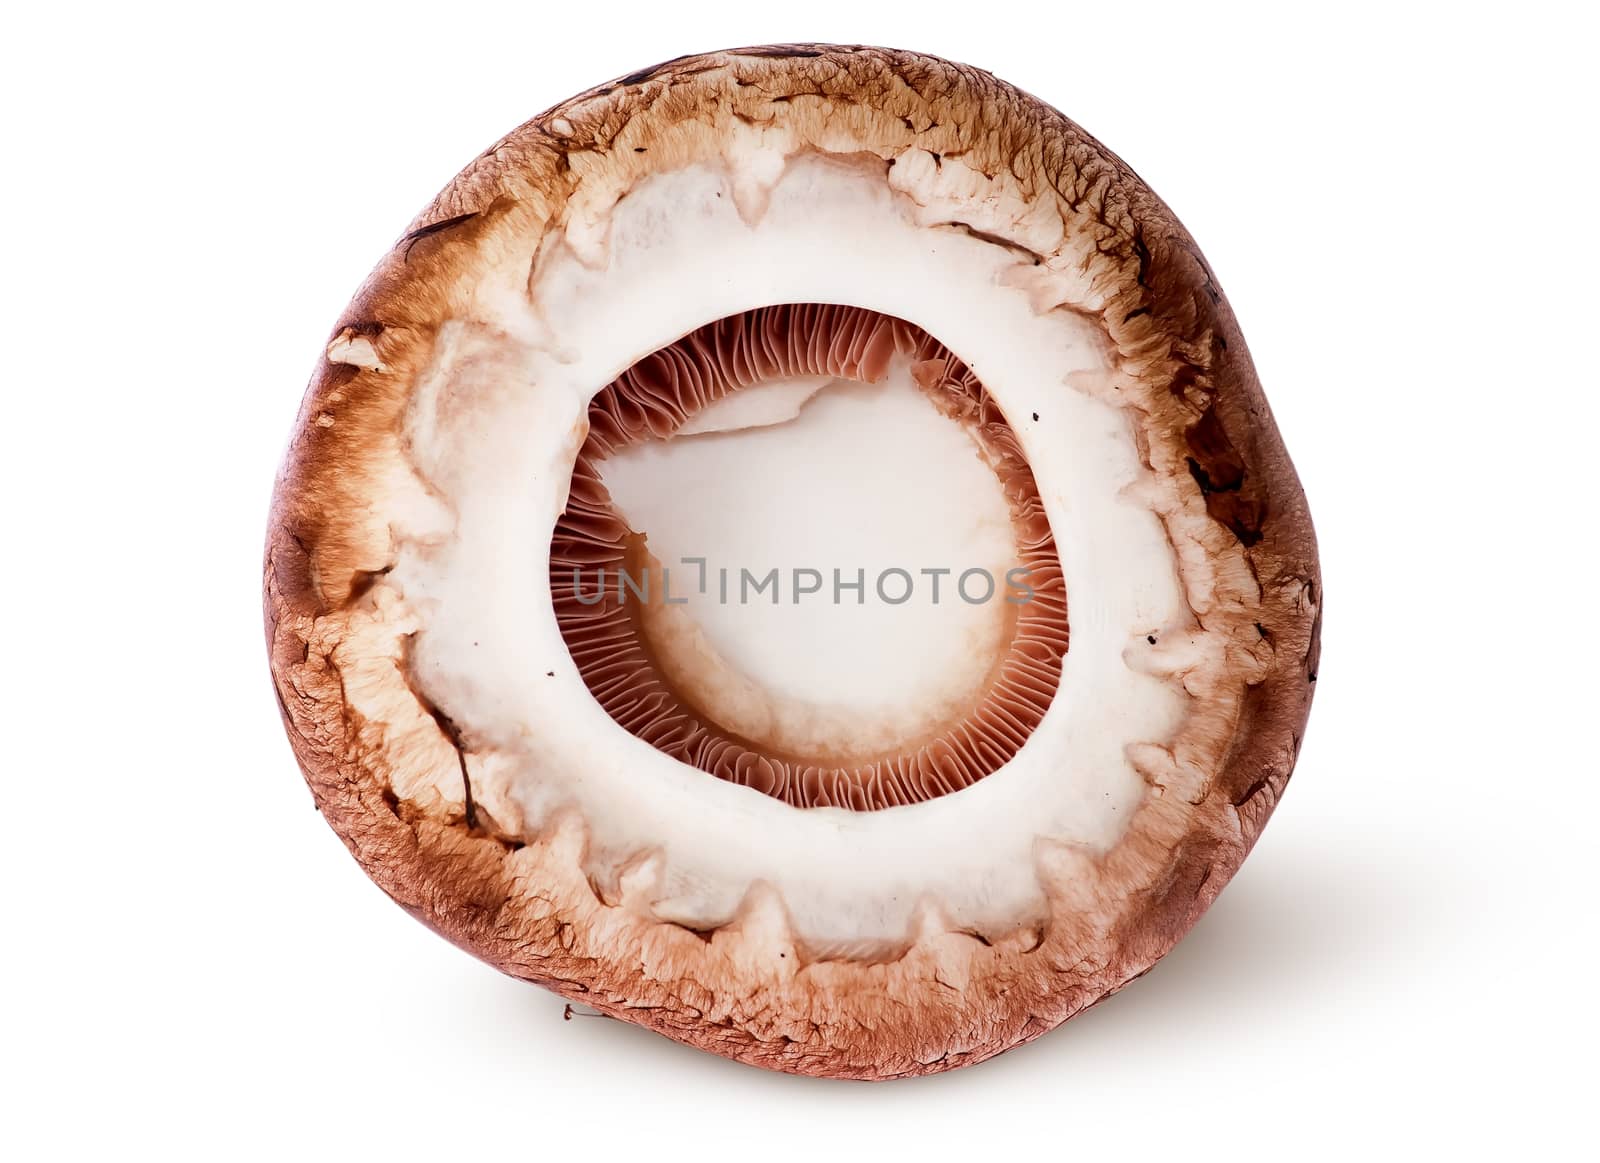 Cap on a brown champignon by Cipariss